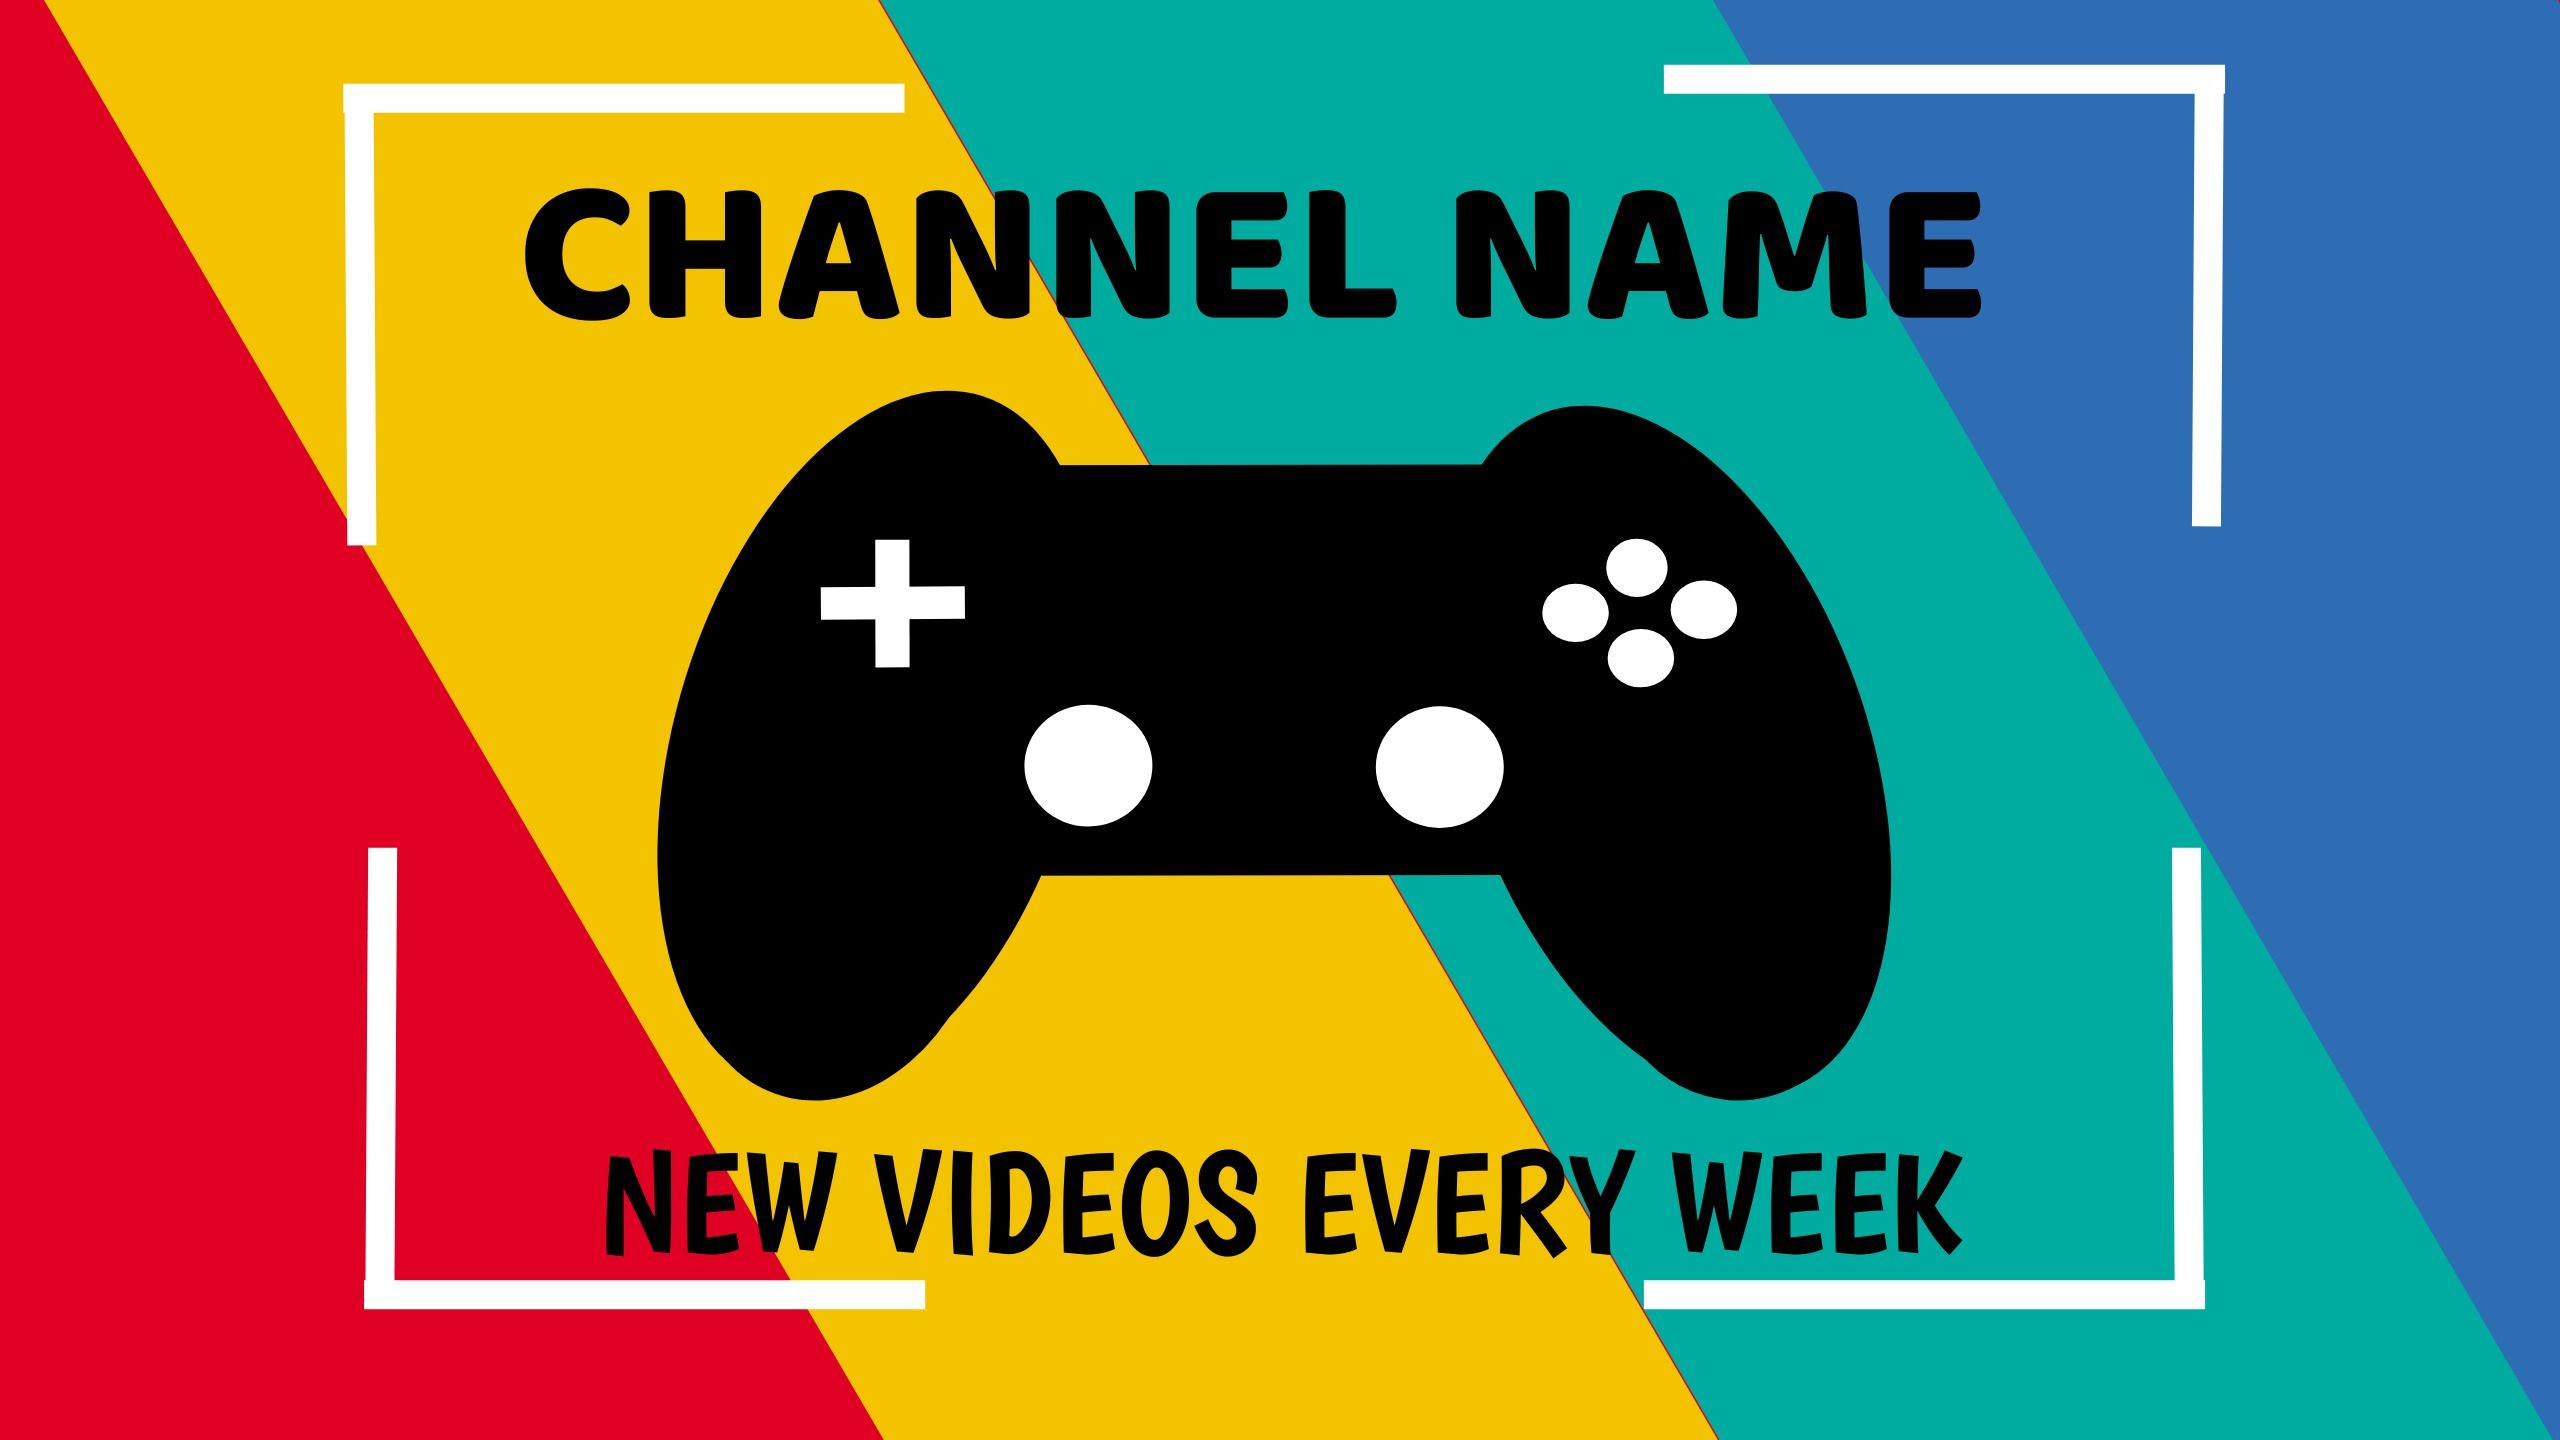 Colorido diseño de plantilla de banner de YouTube con el texto &quot;Nuevos videos cada semana&quot; y un ícono de consola en el centro